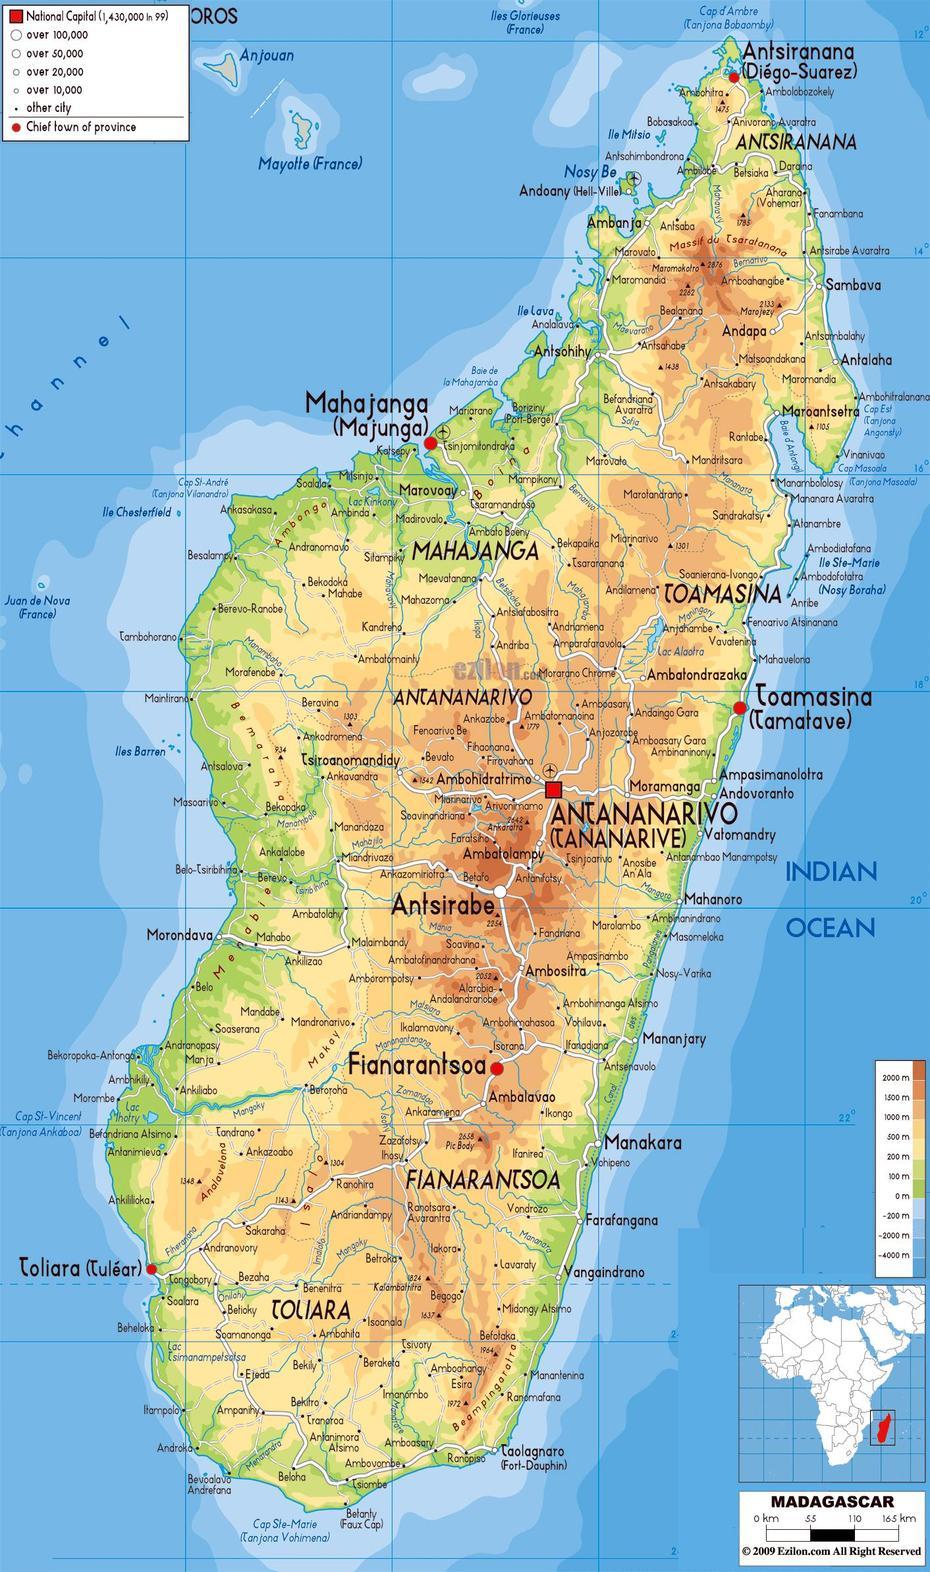 Madagascar Rivers, Madagascar Road, Touristische Karte, Vohitrandriana, Madagascar